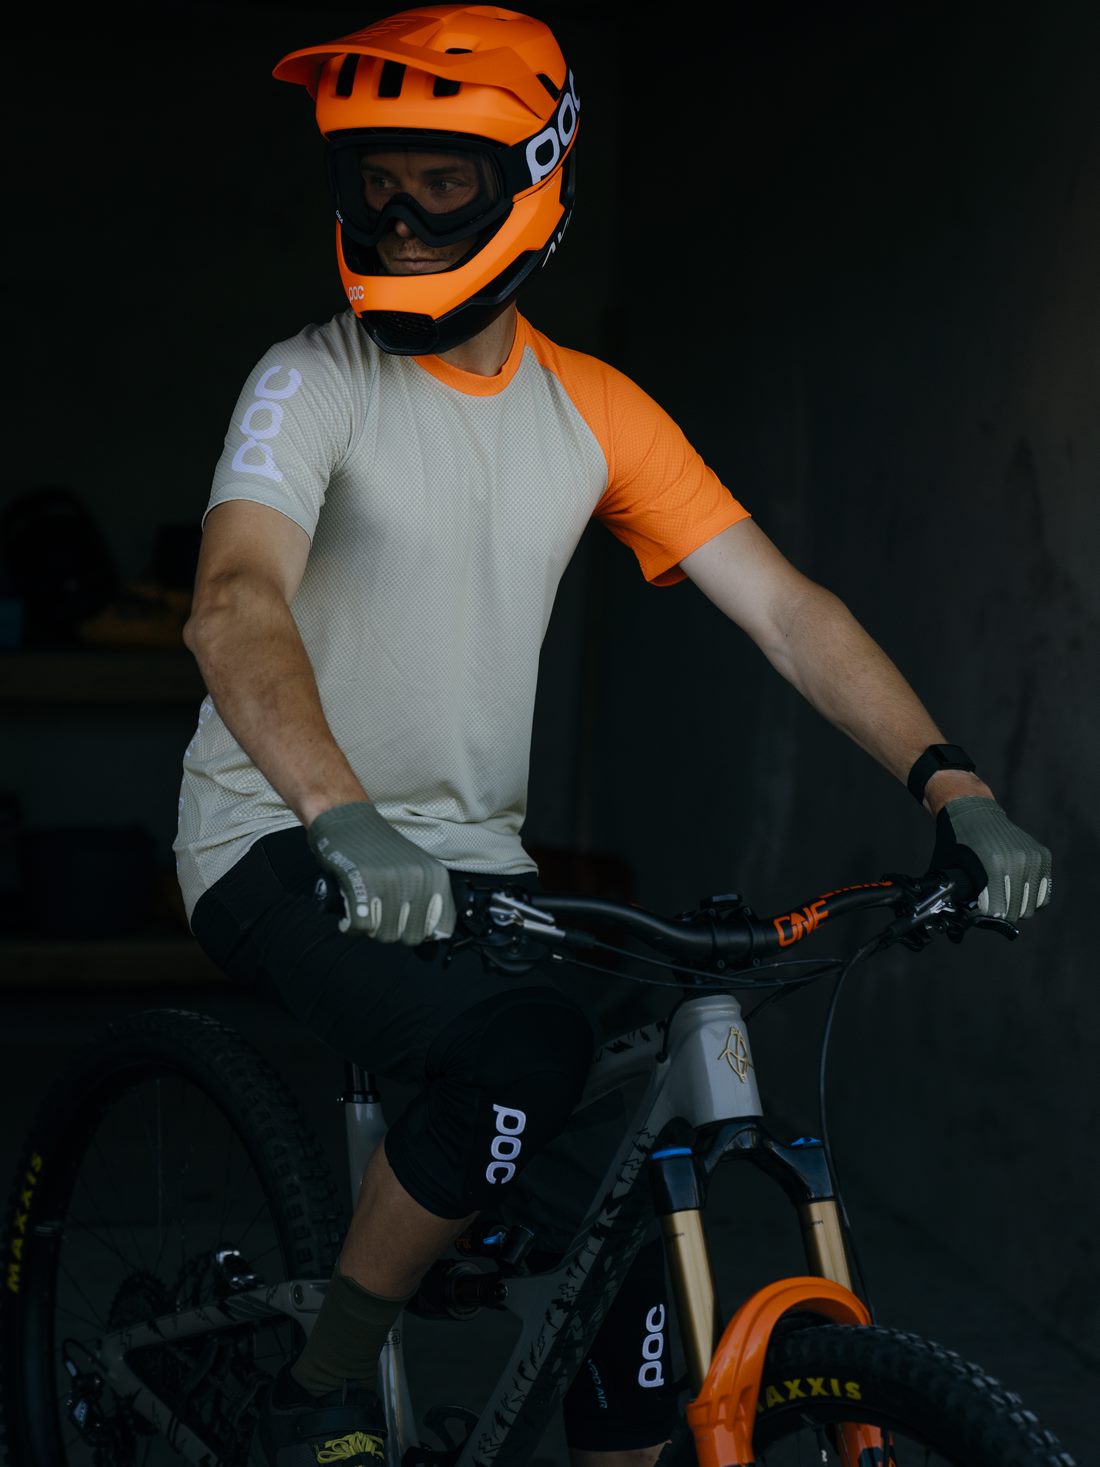 Kask rowerowy POC OTOCON RACE MIPS - Fluo. Orange Avip/Ur. Black Matt